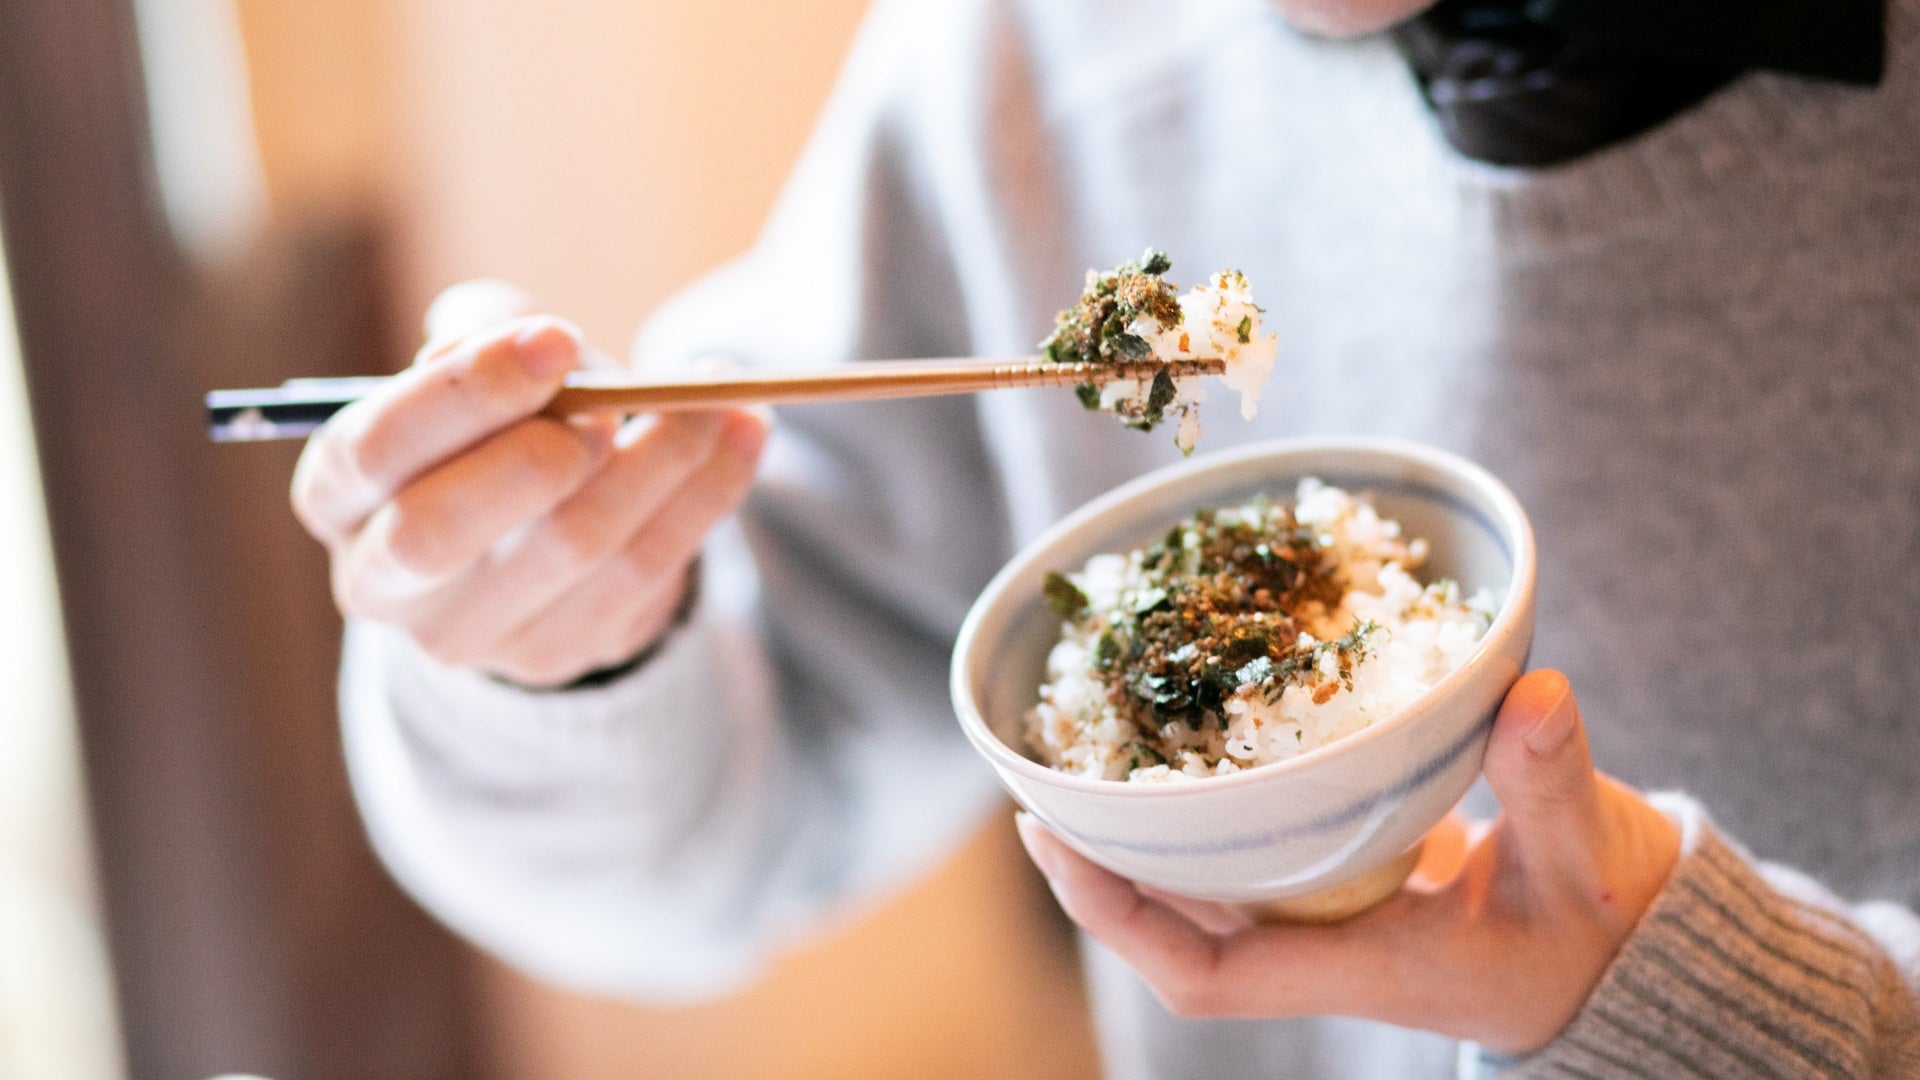 Mangiare furikake e riso con bacchette. Come Usare Le Bacchette Secondo il Galateo Giapponese a Tavola